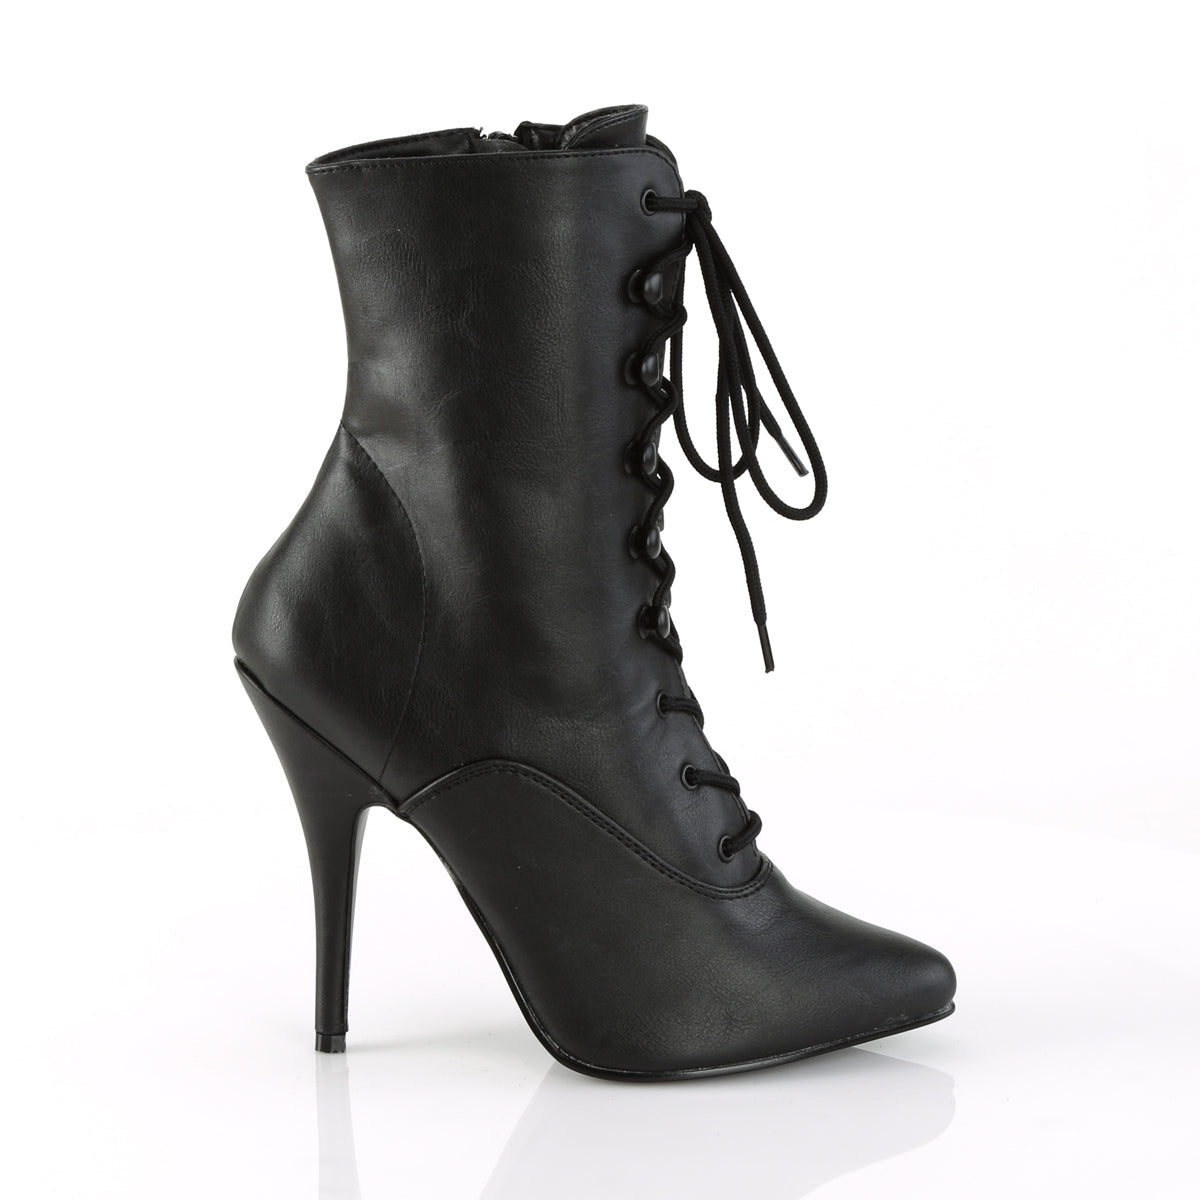 SEDUCE-1020 Pleaser Black Faux Leather Single Sole Shoes [Ankle Boots]